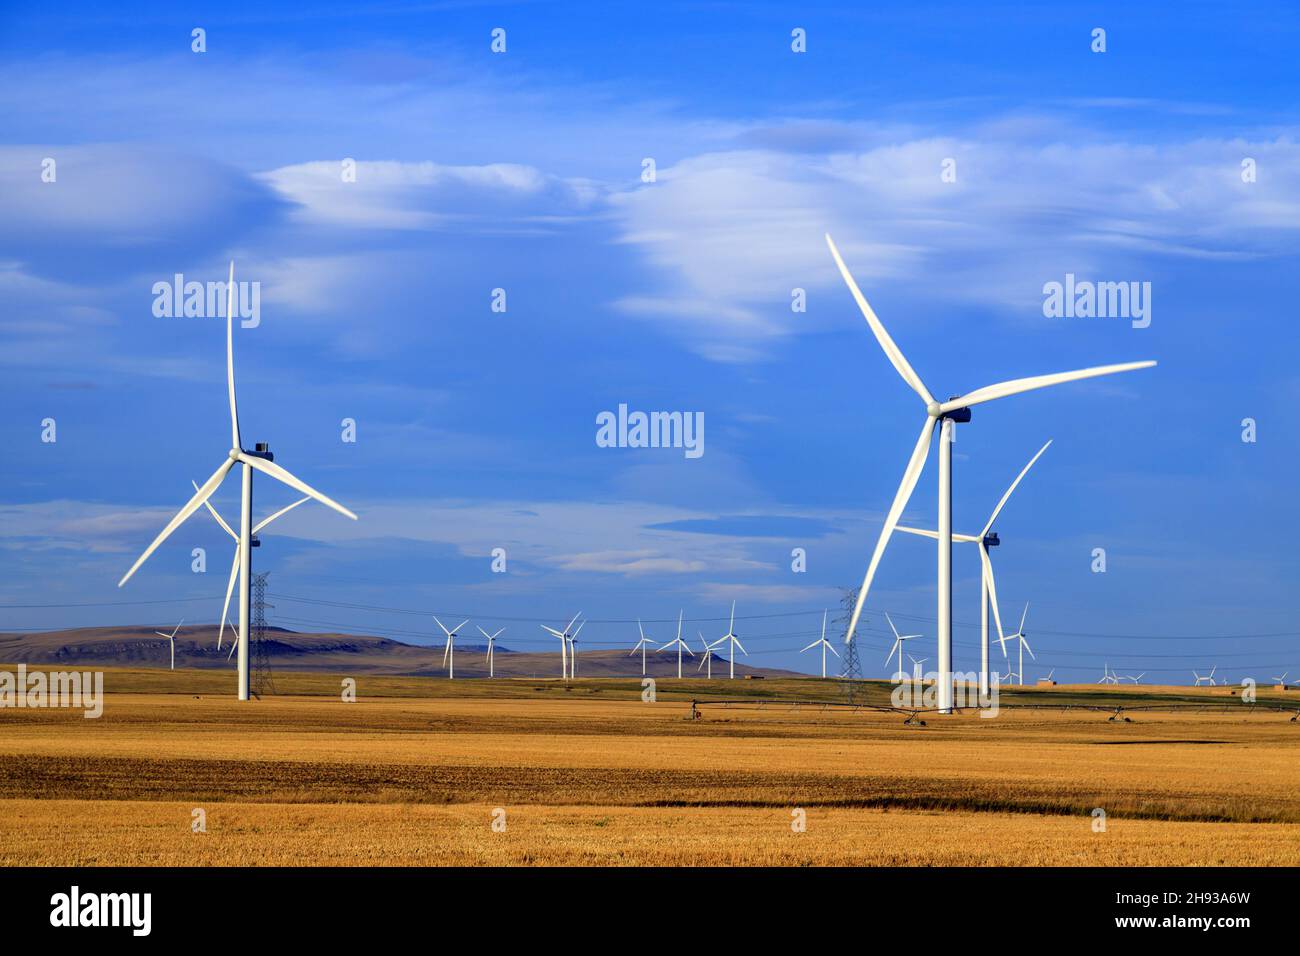 L'énergie éolienne ou l'énergie éolienne est l'utilisation d'éoliennes pour produire de l'électricité.L'énergie éolienne est une source d'énergie populaire, durable et renouvelable. Banque D'Images